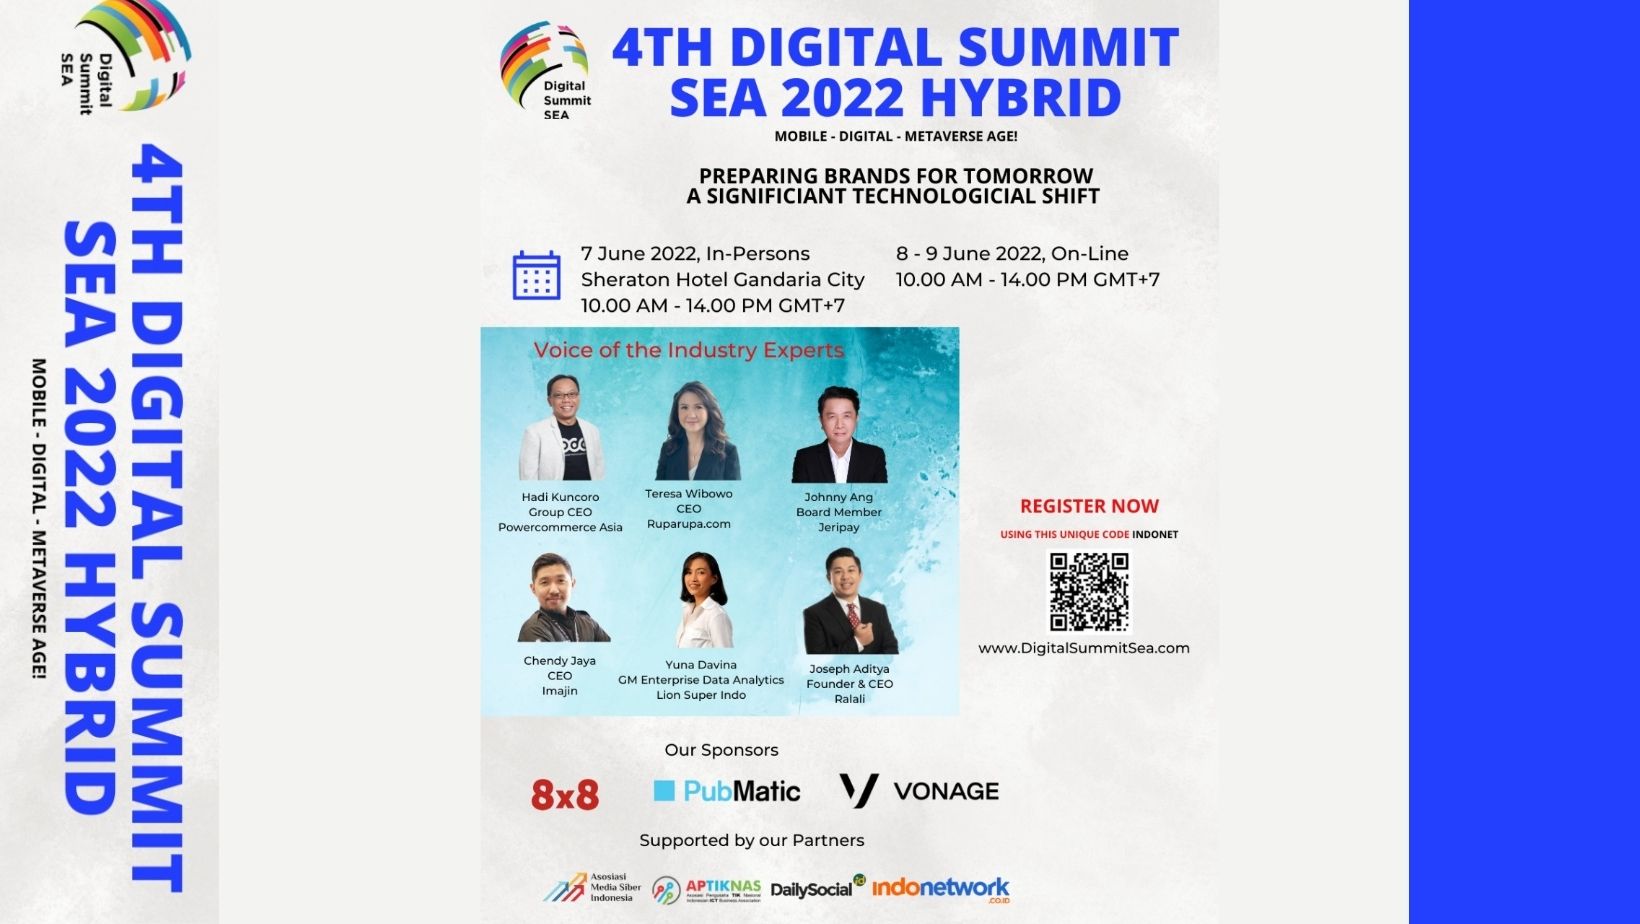 PRESS RELEASE 4th Digital Summit Sea 2022 HYBRID